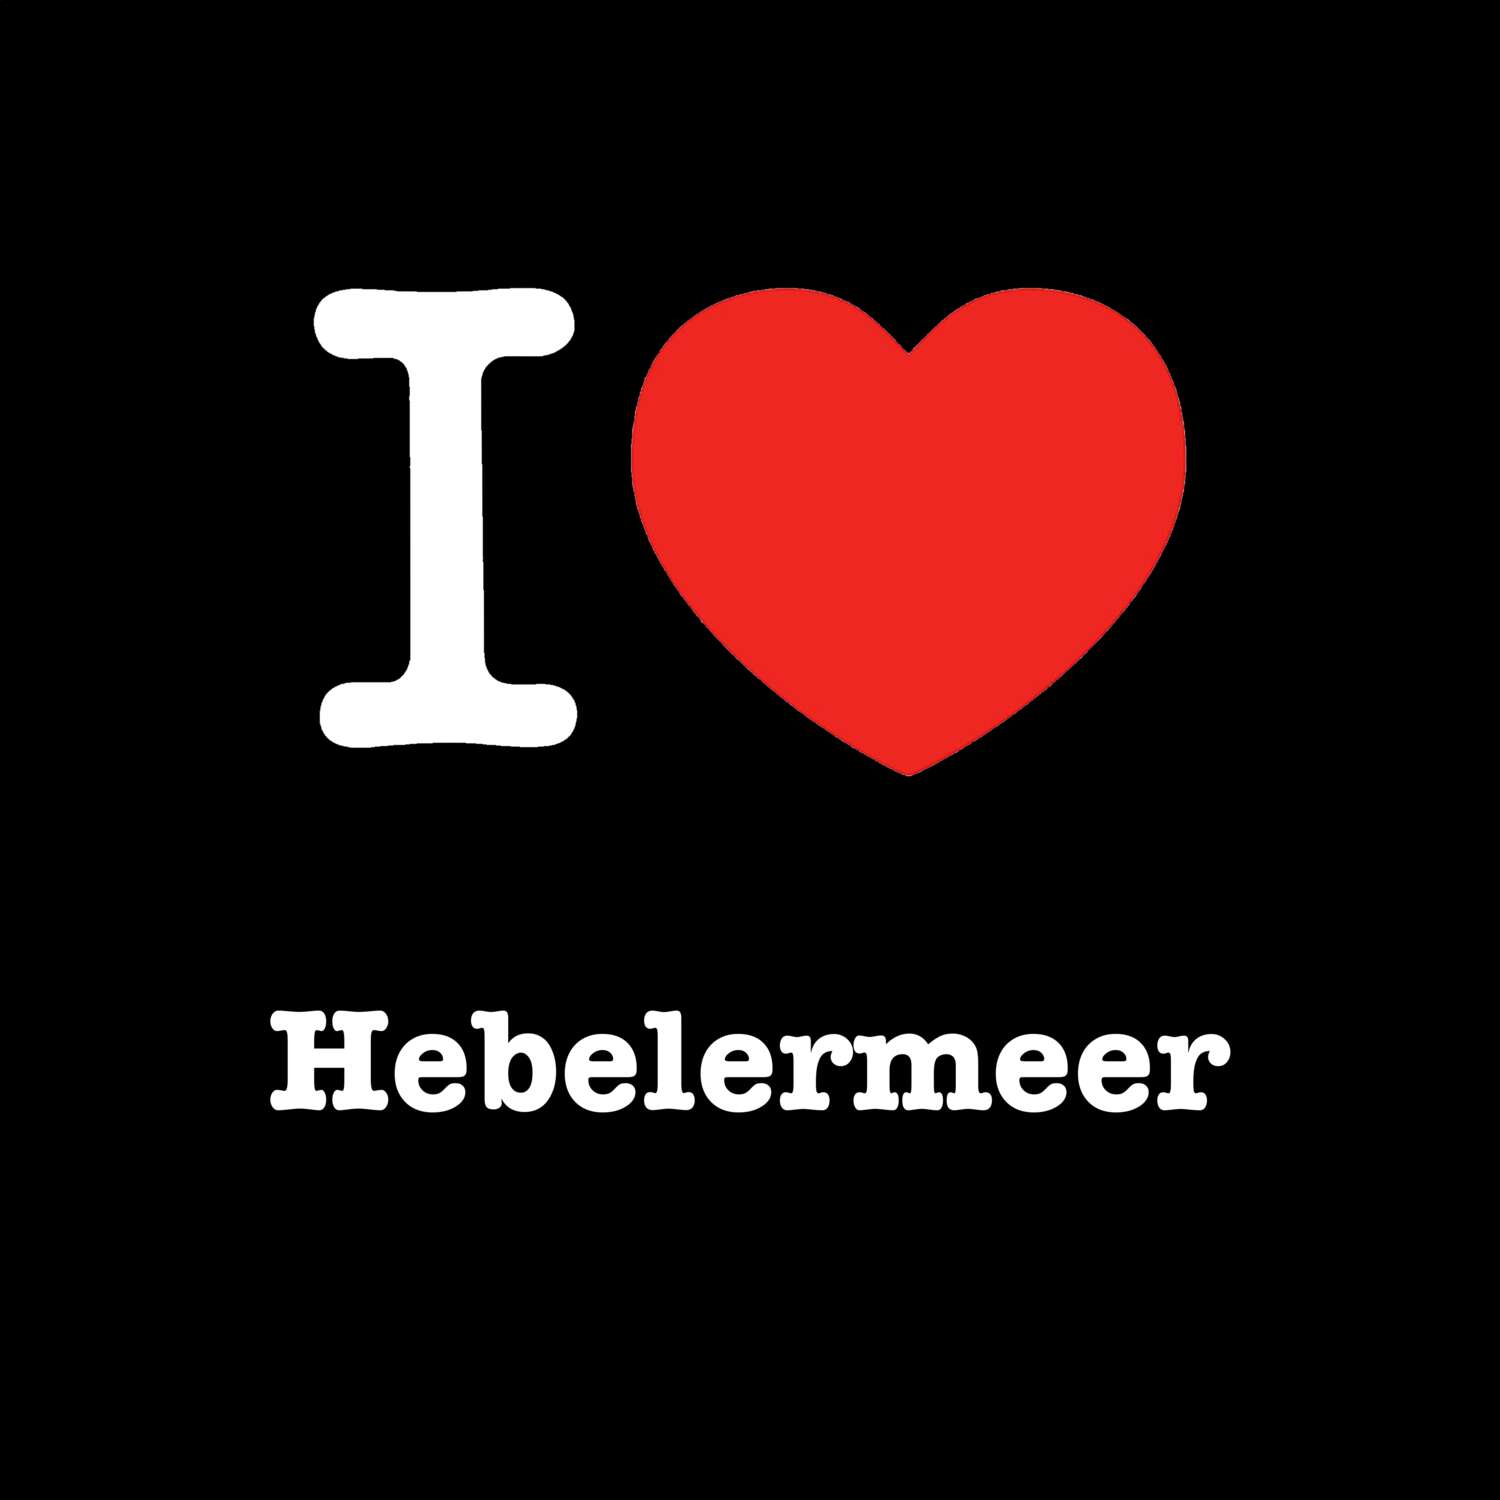 Hebelermeer T-Shirt »I love«